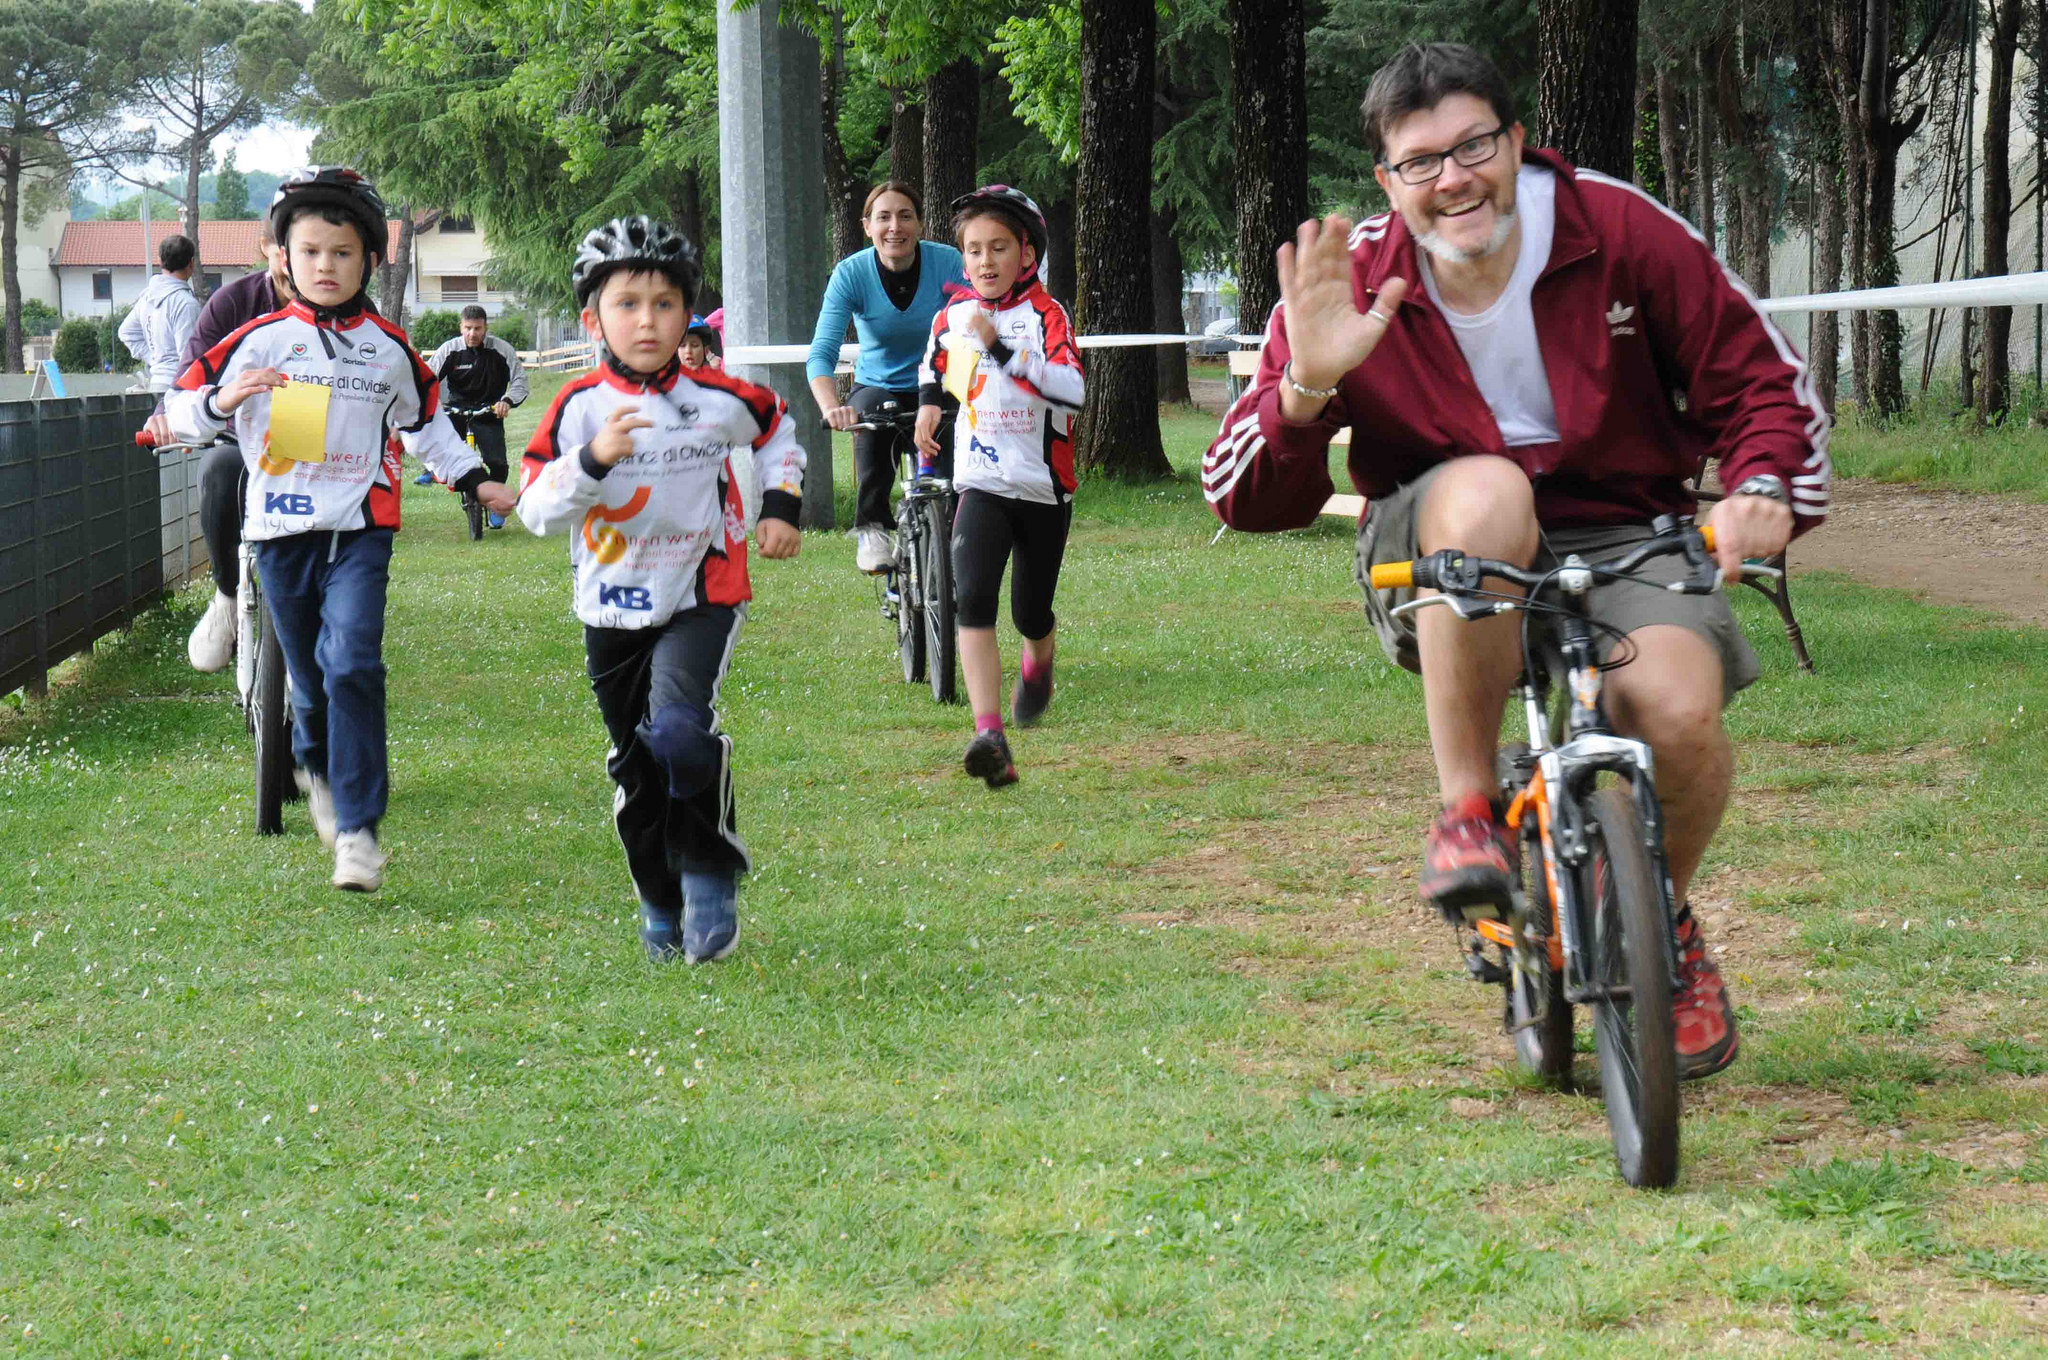 Torna il Multisport Day per i giovani dai 6 ai 13 anni, sabato 16 maggio a Gradisca d’Isonzo